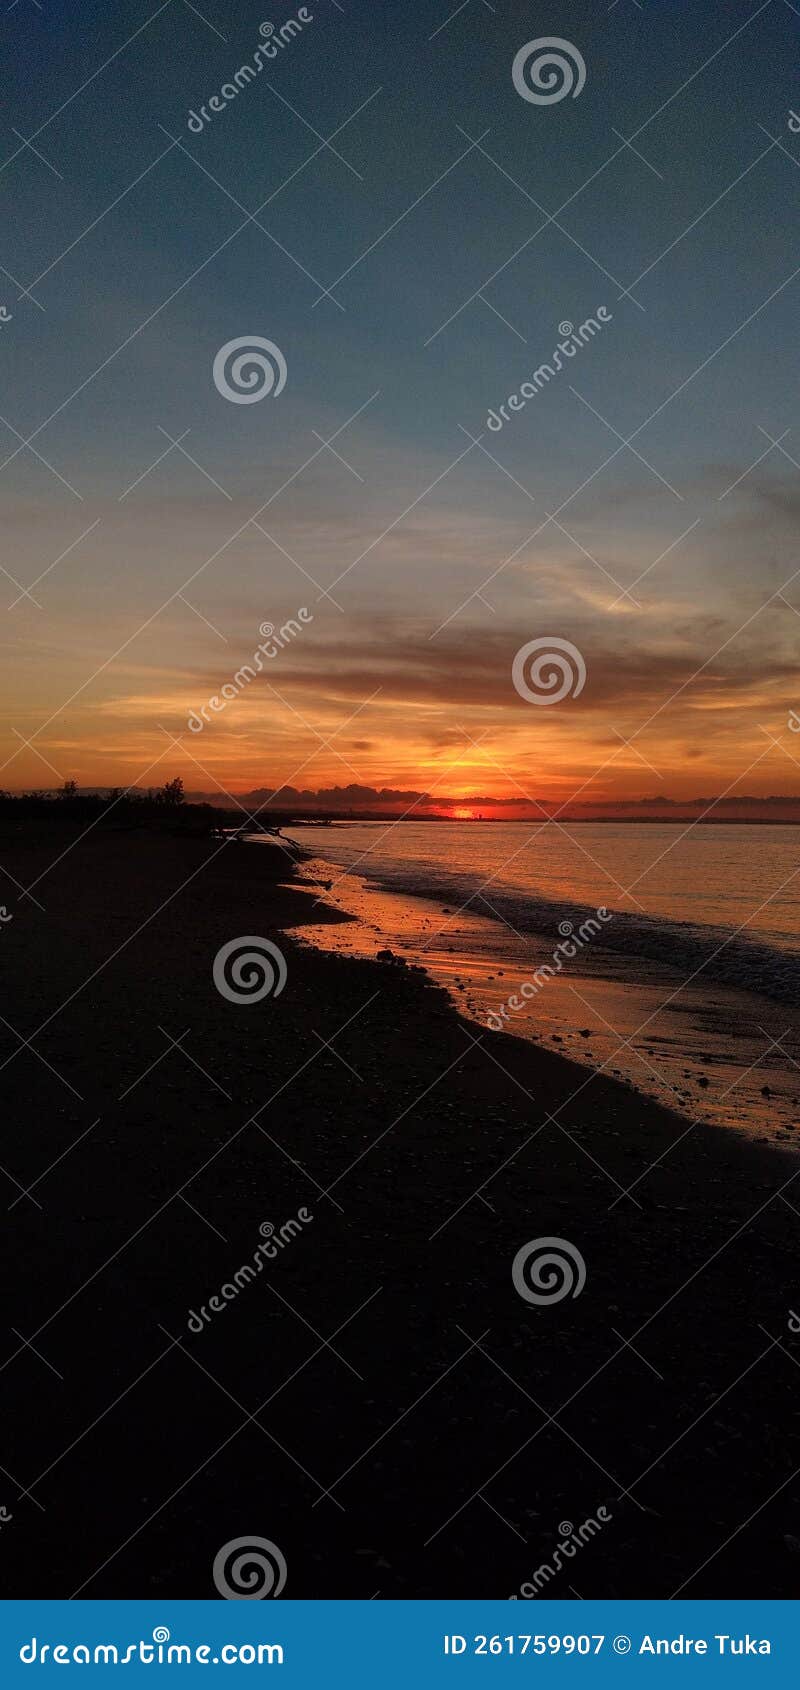 sunset at the oesain beach